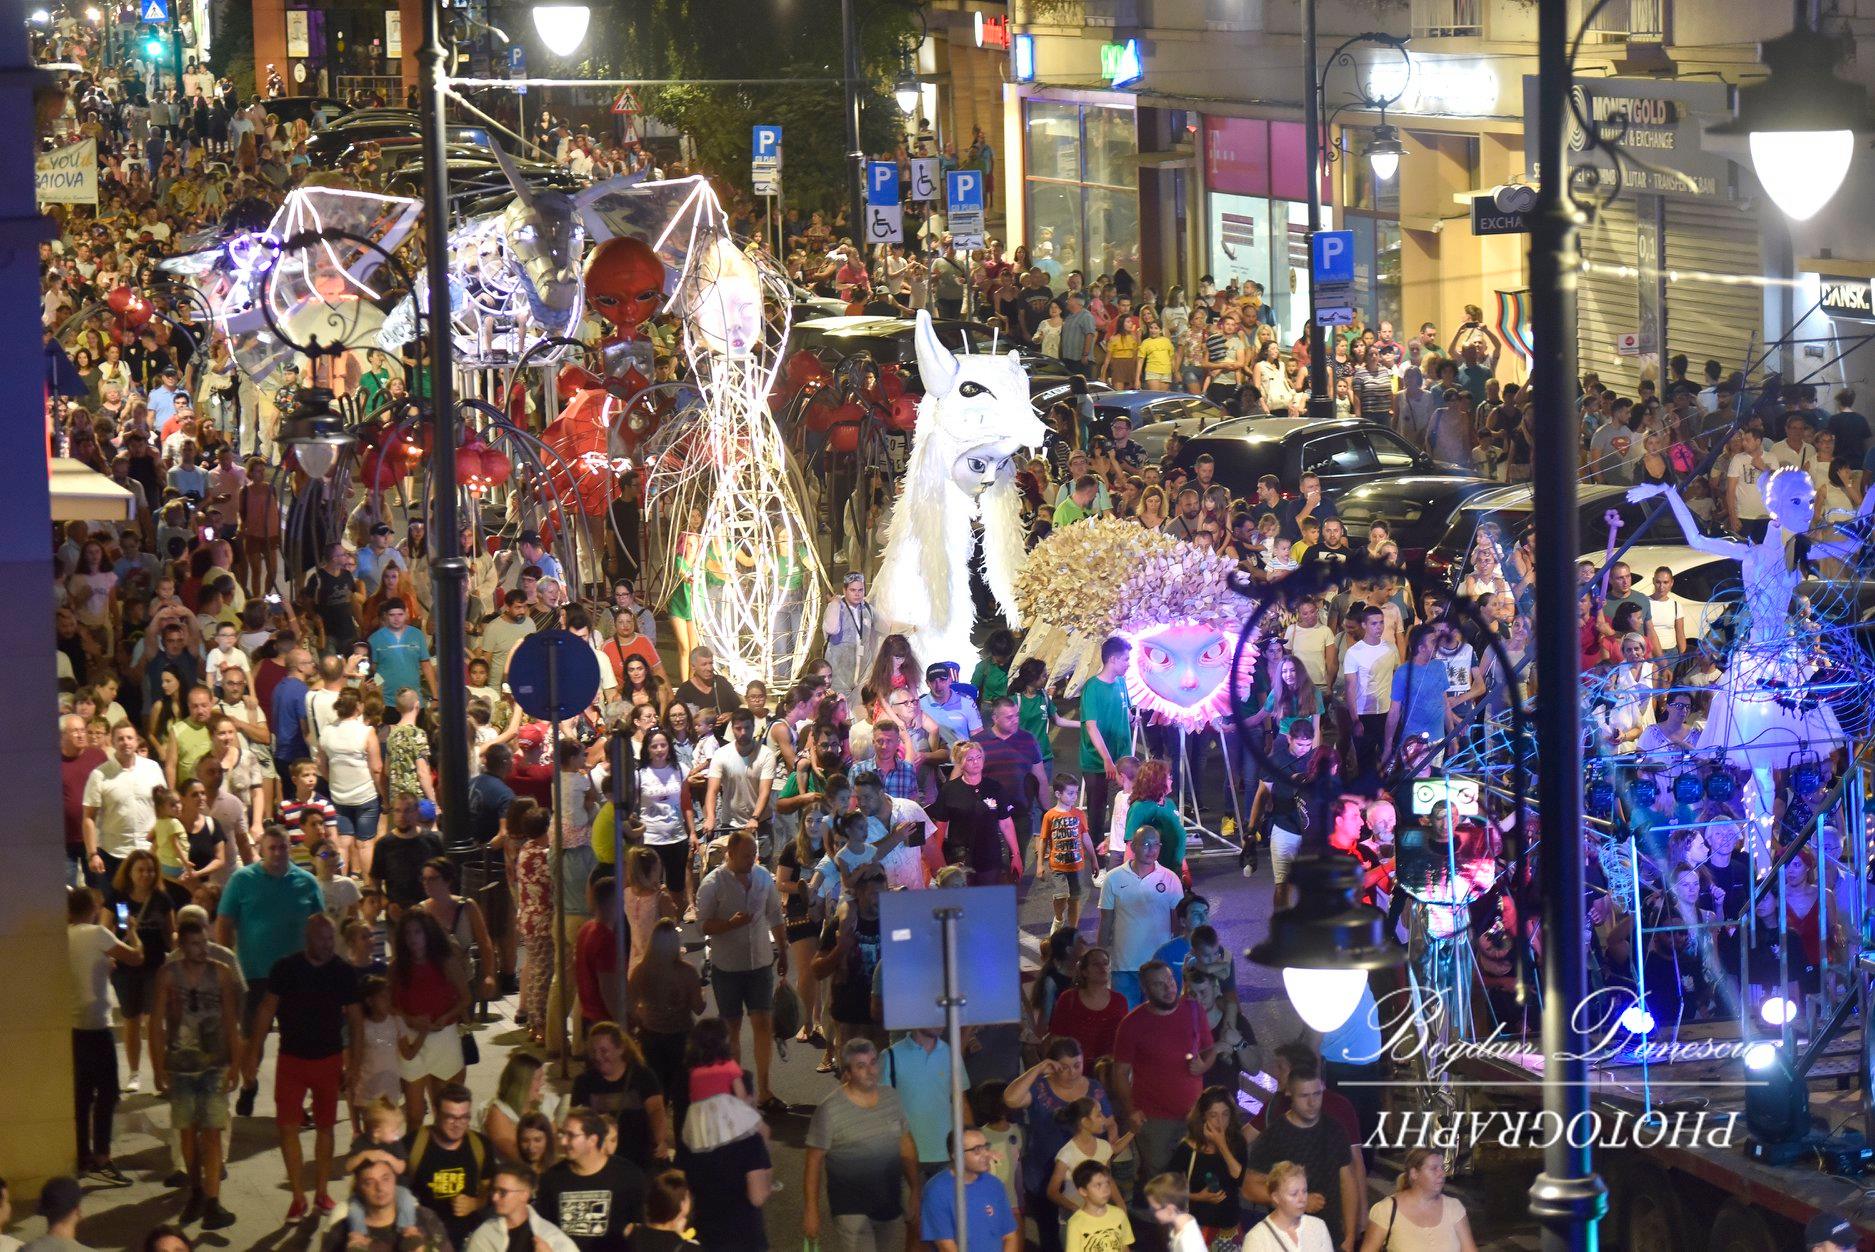 Între 25 august și 1 septembrie, Craiova devine capitala păpușilor gigant la Festivalul Puppets Occupy Street